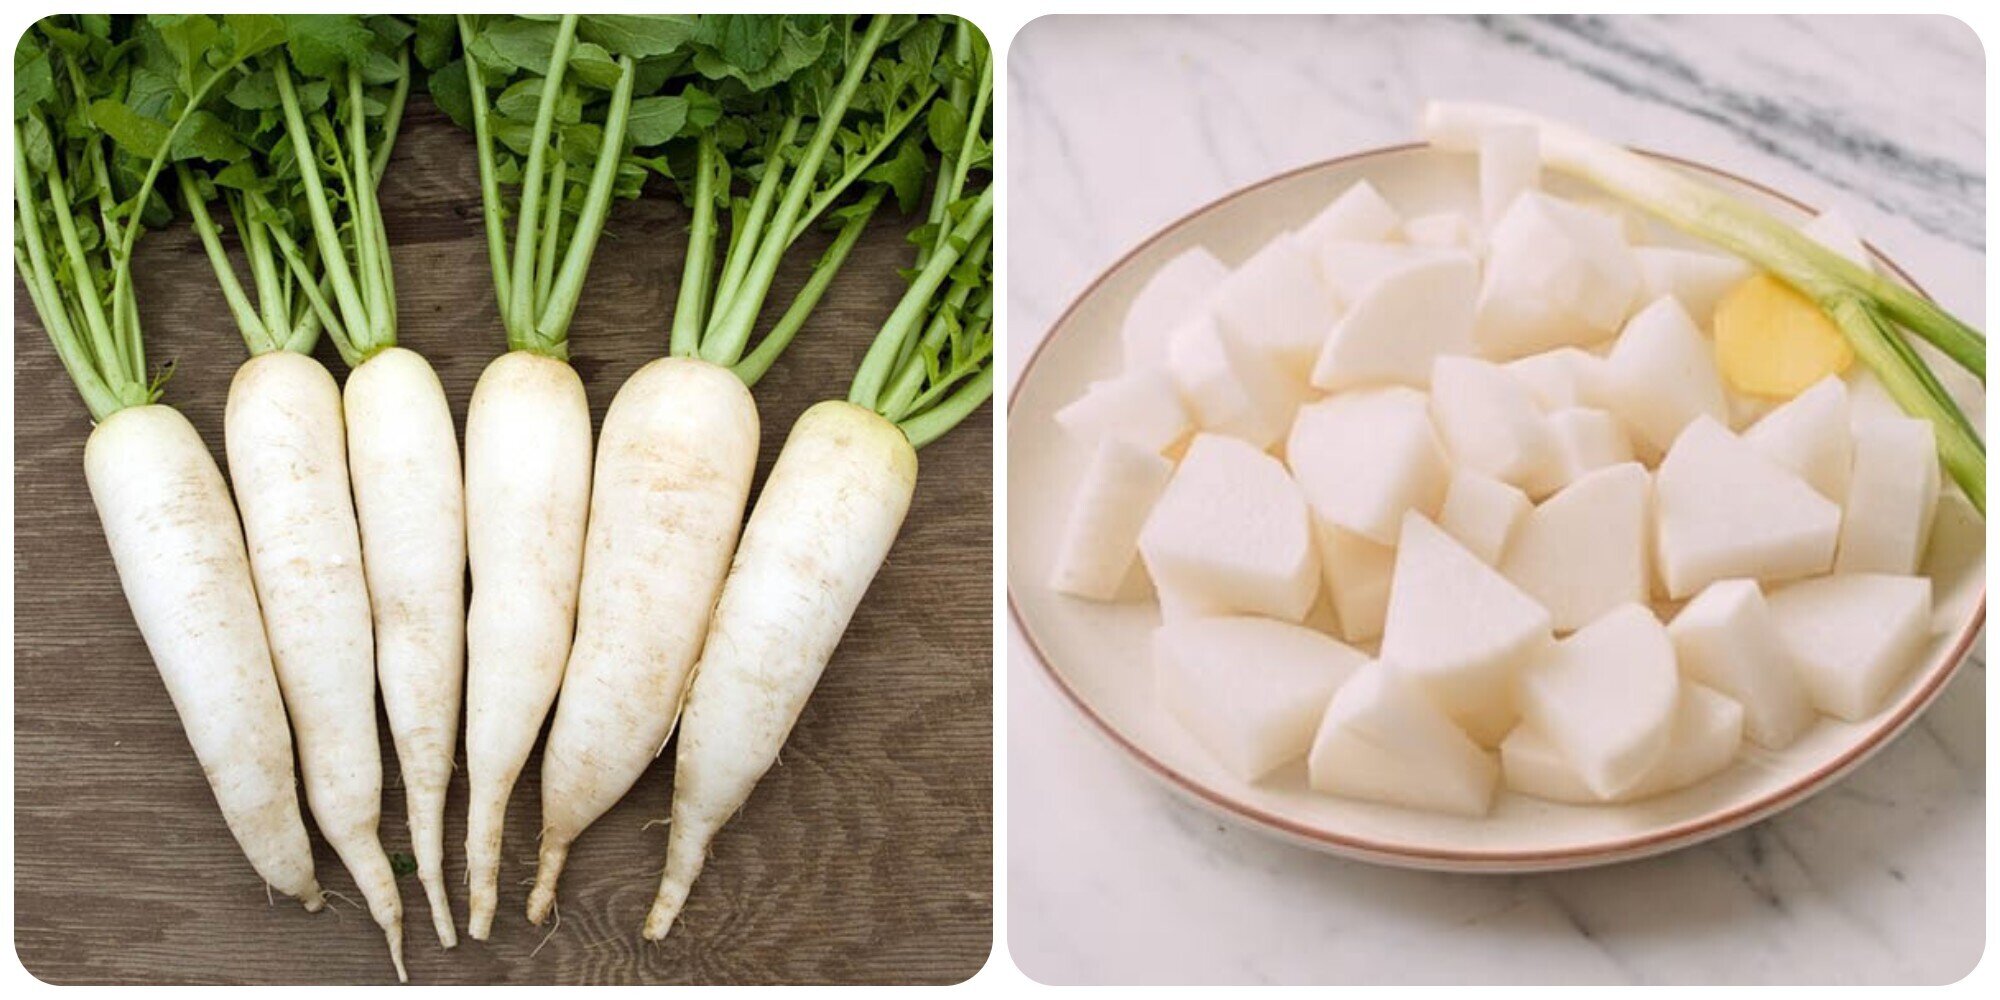 Vì có nhiều tác dụng với sức khoẻ nên củ cải được ví như nhân sâm trắng mùa đông.